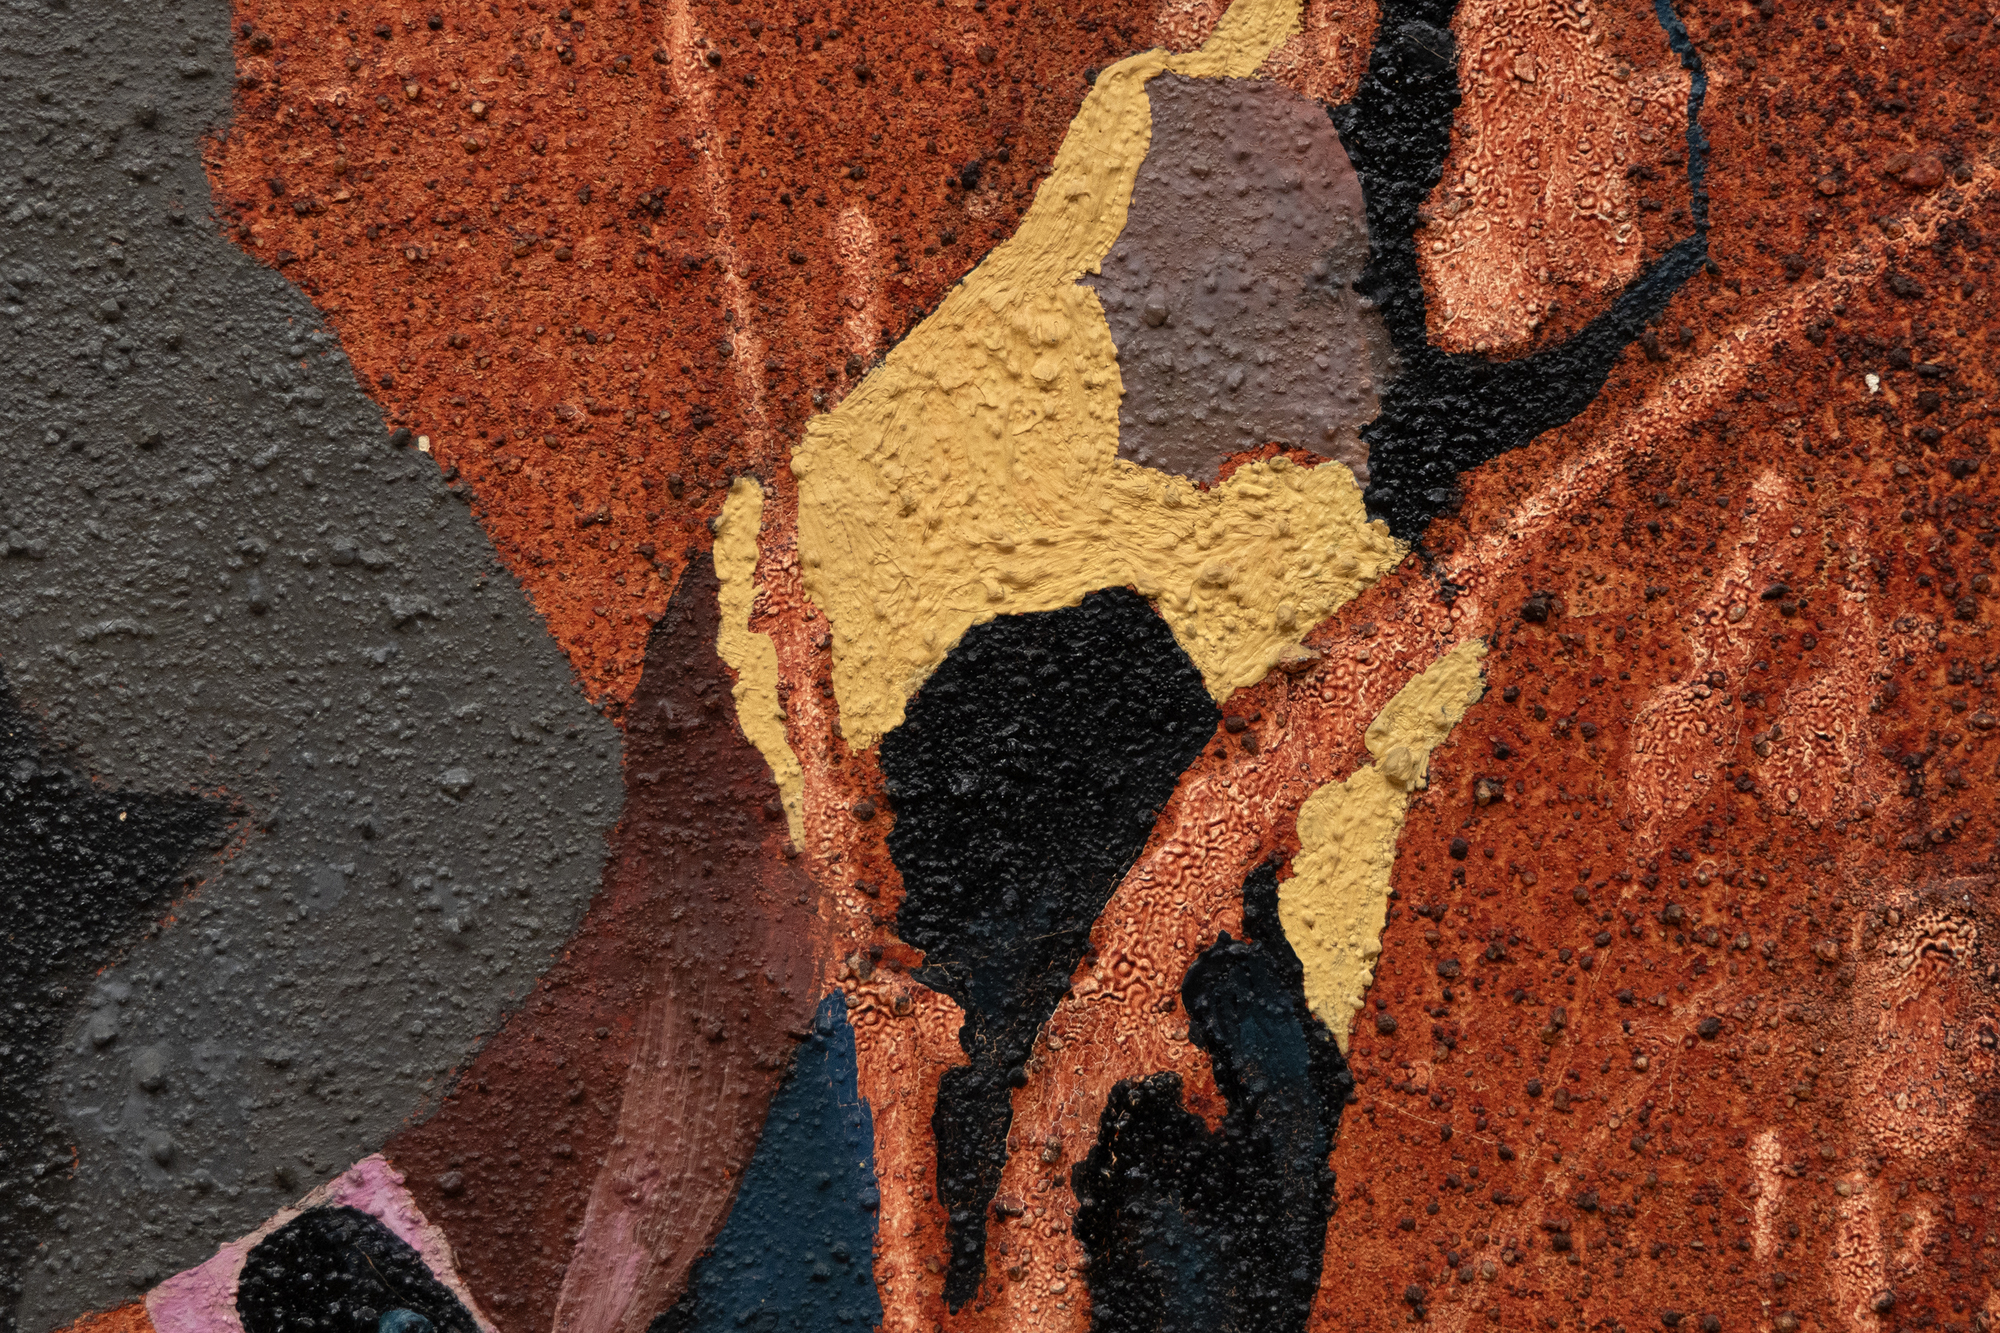 当多萝西·胡德（Dorothy Hood）在1956年画《精灵》时，她探索了新的领域，从她对自然和人体的观察中发展了各种方法和有机形式的词汇。抽象和具象元素具有模糊性和变革性，它们相互作用，在形而上学的汤中交织、交织和融合身份。在《精灵》中，抽象不是编织挂毯的形式停滞，而是在丝带状卷须的能量场中呼吸、伸展和流动。这是一件体现抽象与超现实主义融合的作品。它隐含的景深、透视和比喻参考暗示了一位女性，其拱形的身体为作品注入了情感、心理或神话的深度。这些元素捕捉了女性立场和处境的复杂本质，有效地融合了两种截然不同的艺术运动之间的界限。